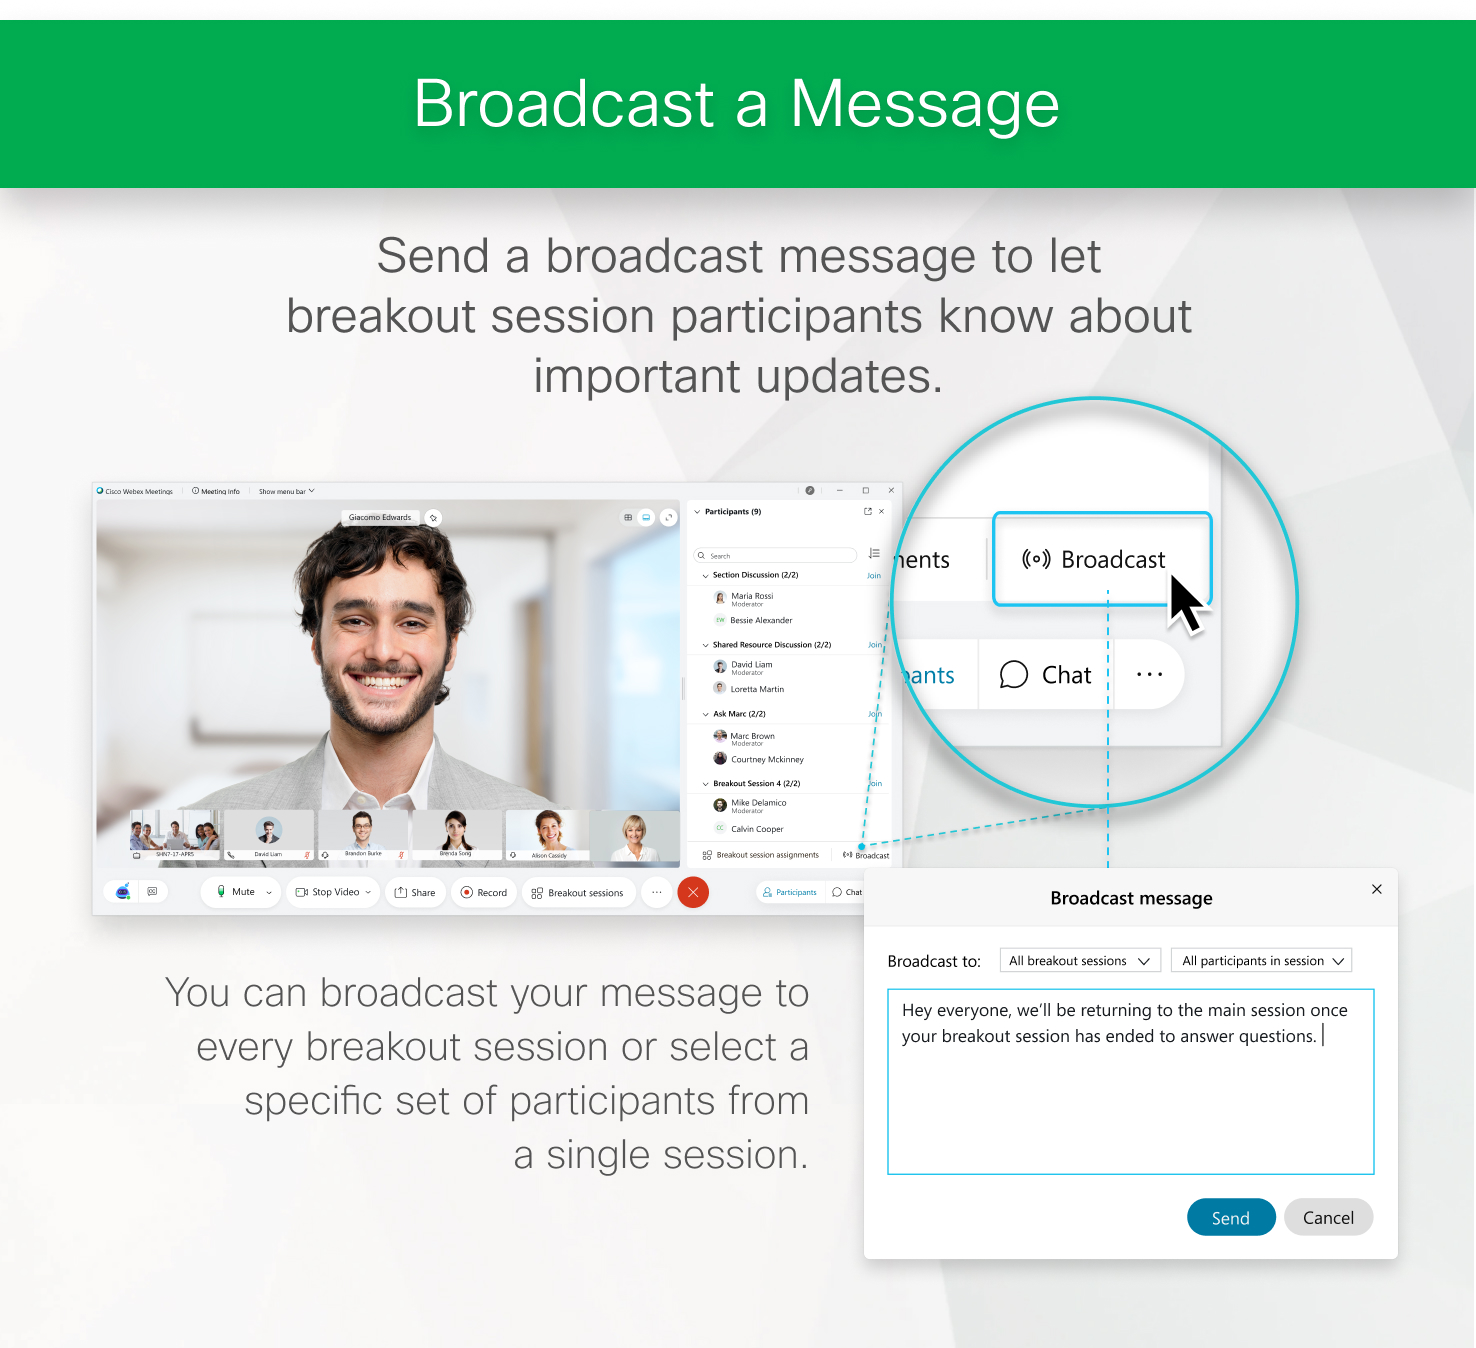 Inviare un messaggio broadcast per informare i partecipanti alla sessione interattiva sugli aggiornamenti importanti.